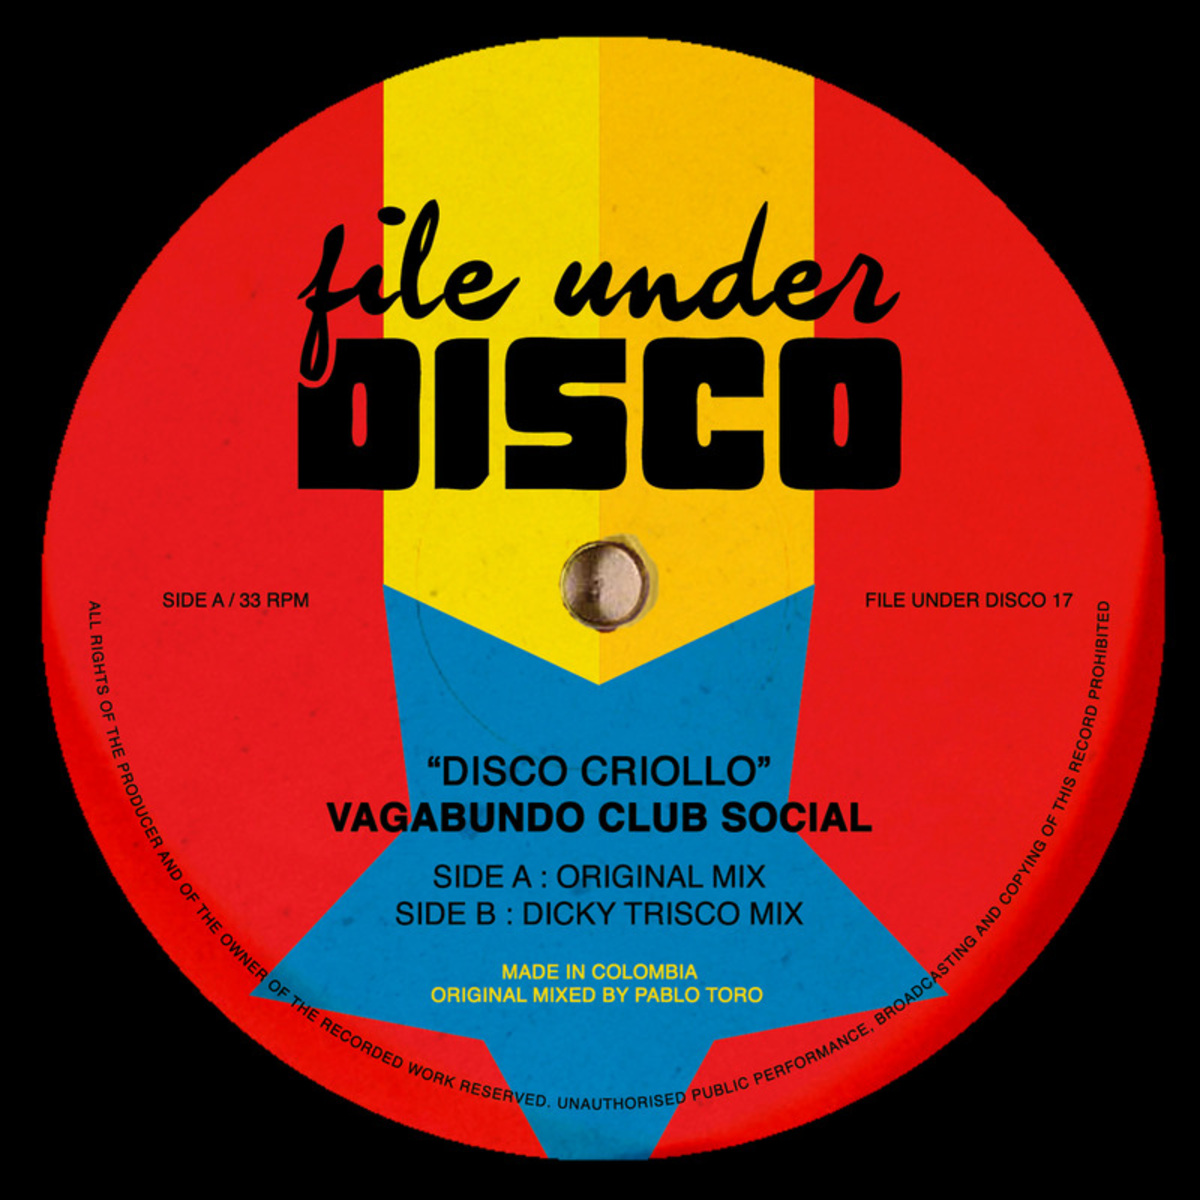 Vagabundo Club Social - Disco Criollo / File Under Disco